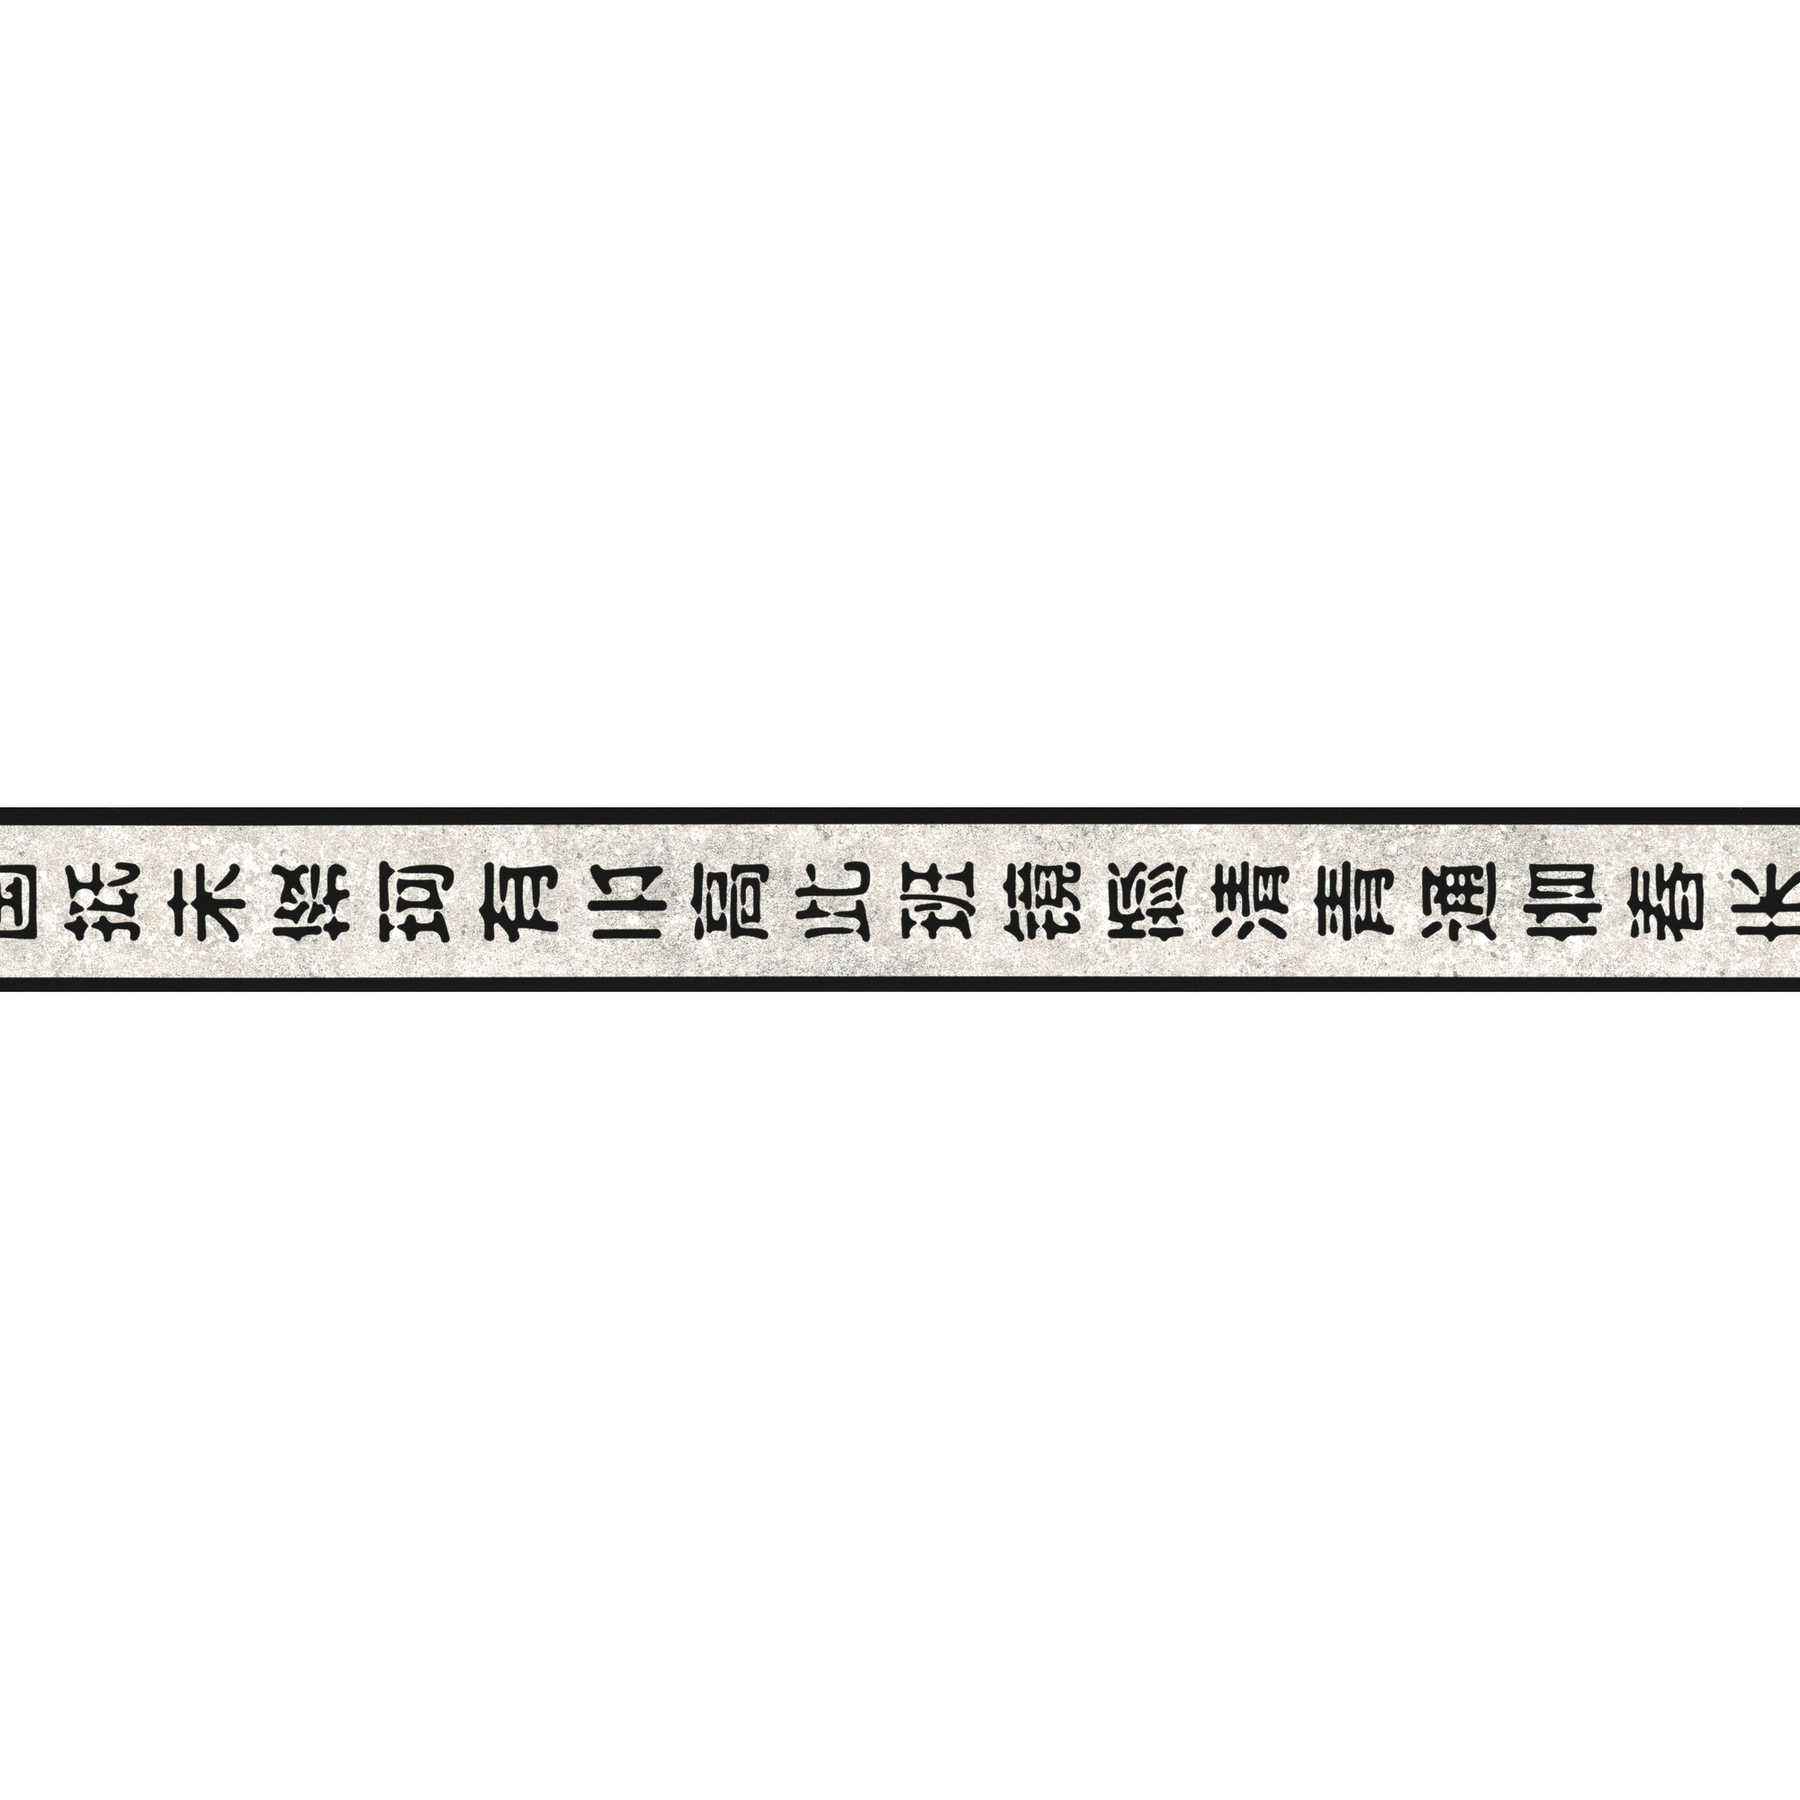         Schwarz-Weiße Tapetenborte mit asiatischen Zeichen
    